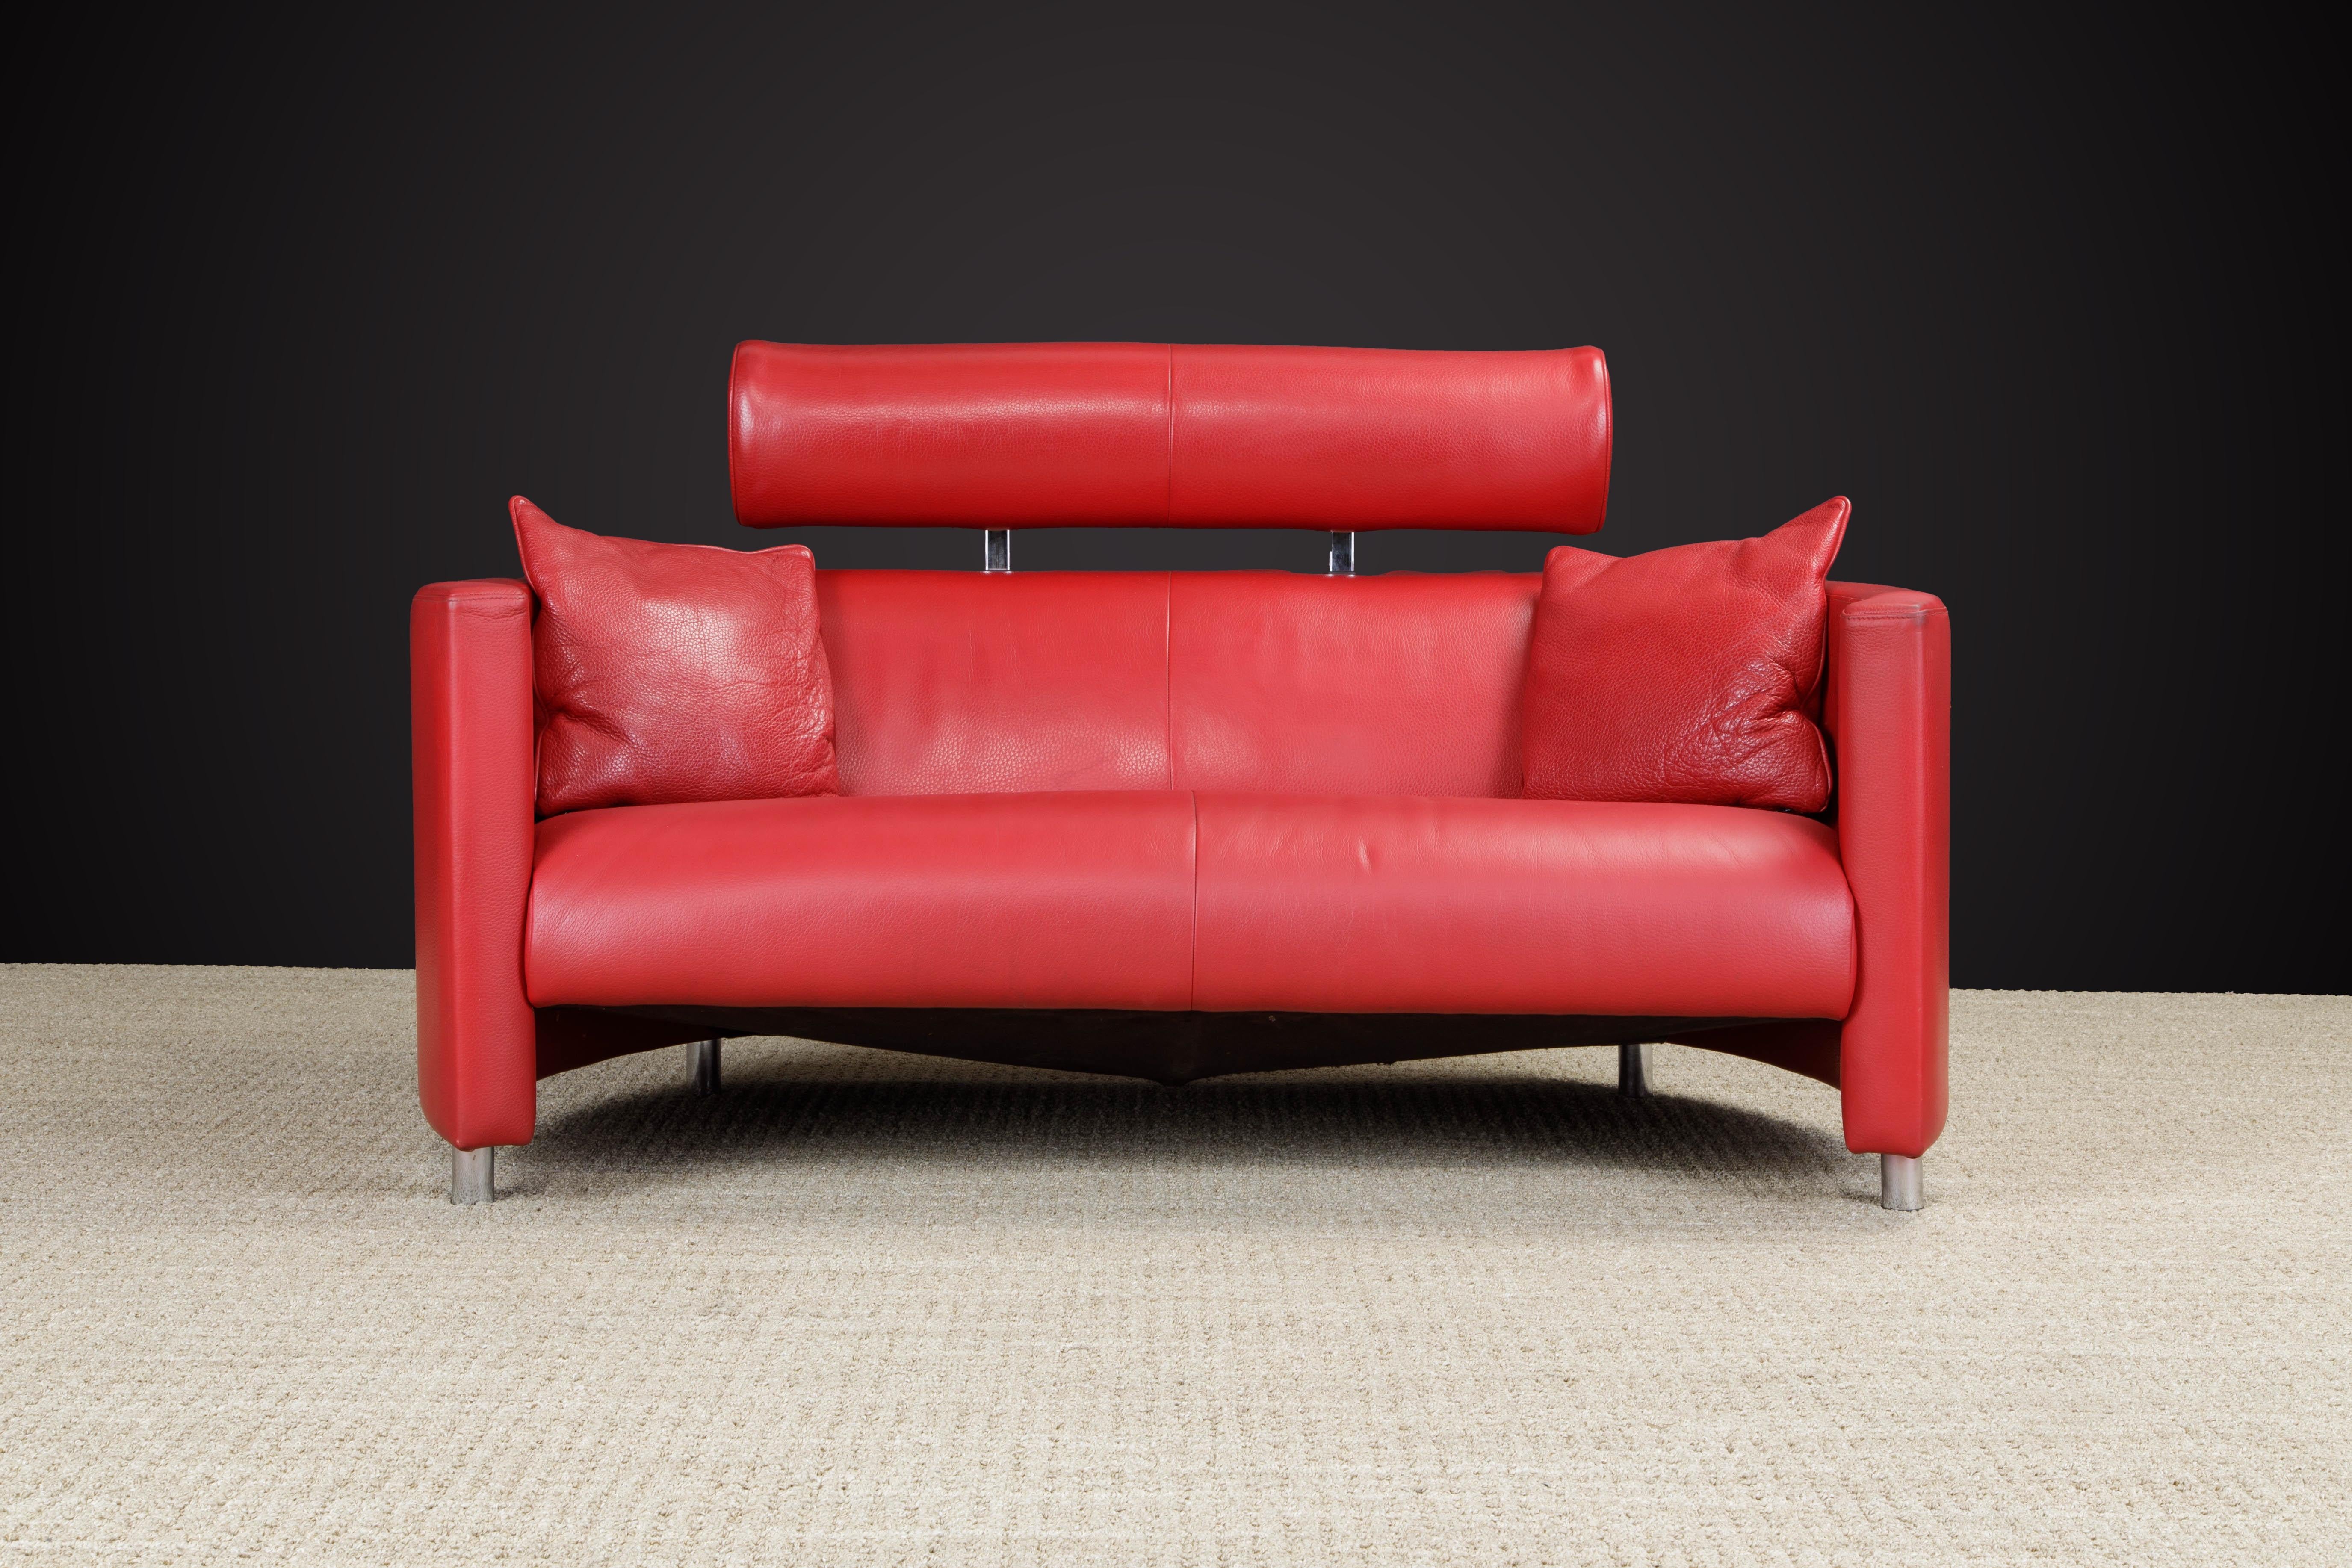 Dieses schöne Post-Modern-Liegesofa aus rotem Leder wurde von Bernard Massot entworfen und von Massot, Frankreich, in den 1980er/90er Jahren hergestellt. 

Die sinnlich geschwungenen Seiten mit verchromten Stahlbeinen sind mit wunderschönem rotem